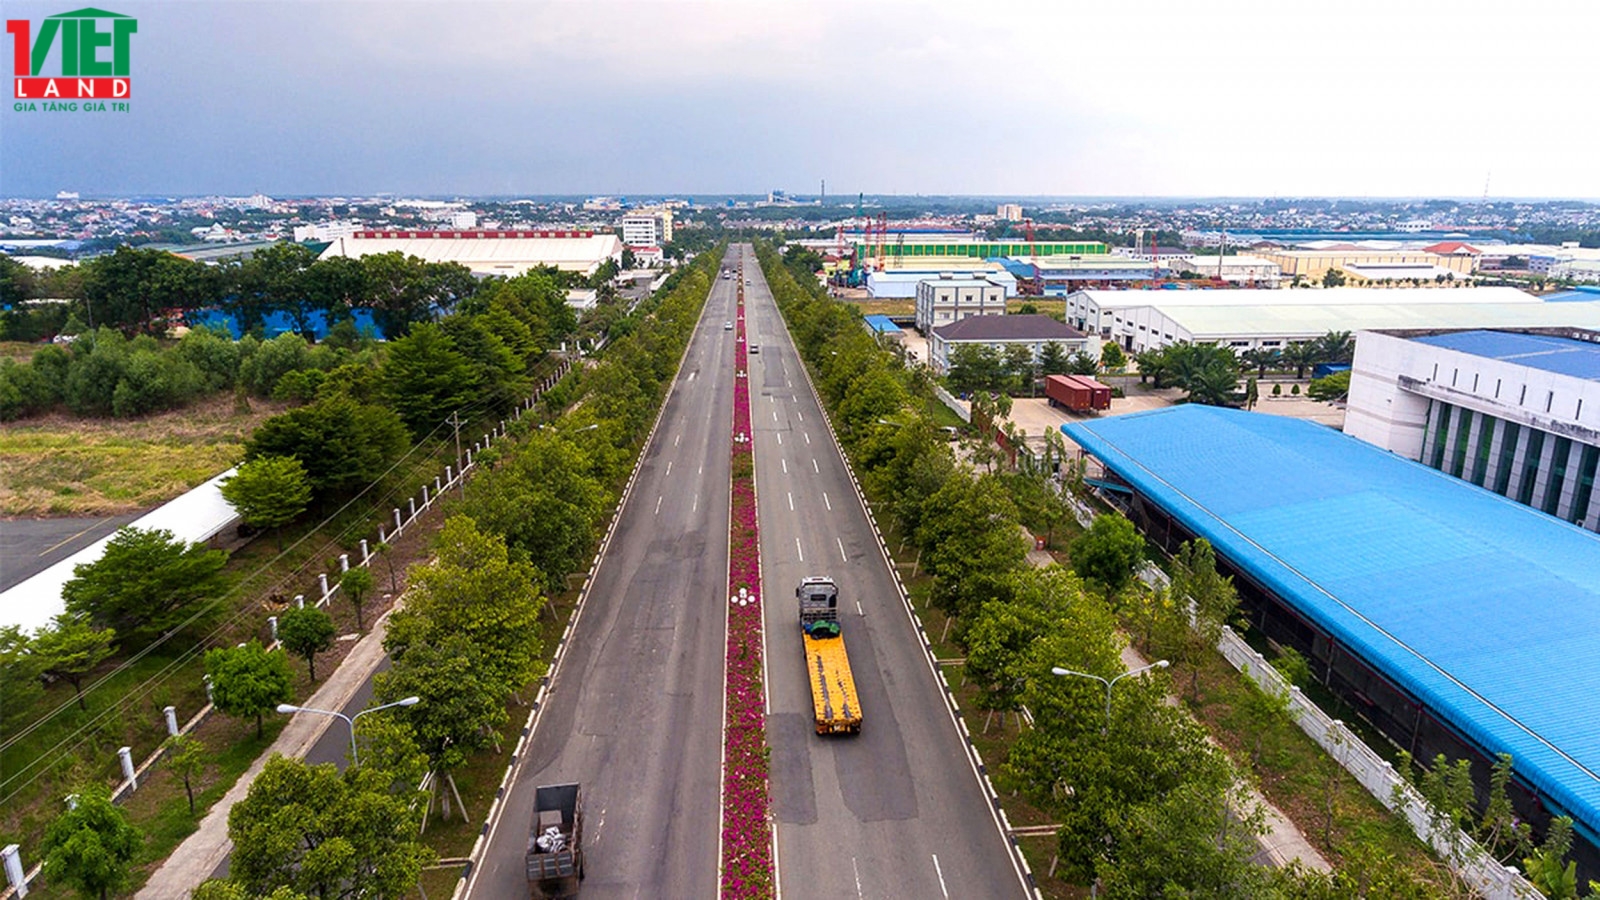 Sản xuất tại nhà máy của Công ty Rheem Việt Nam (vốn FDI từ Úc) vừa được mở rộng dây chuyền trong khu công nghiệp tại thành phố Thủ Dầu Một, tỉnh Bình Dương từ đầu năm 2023